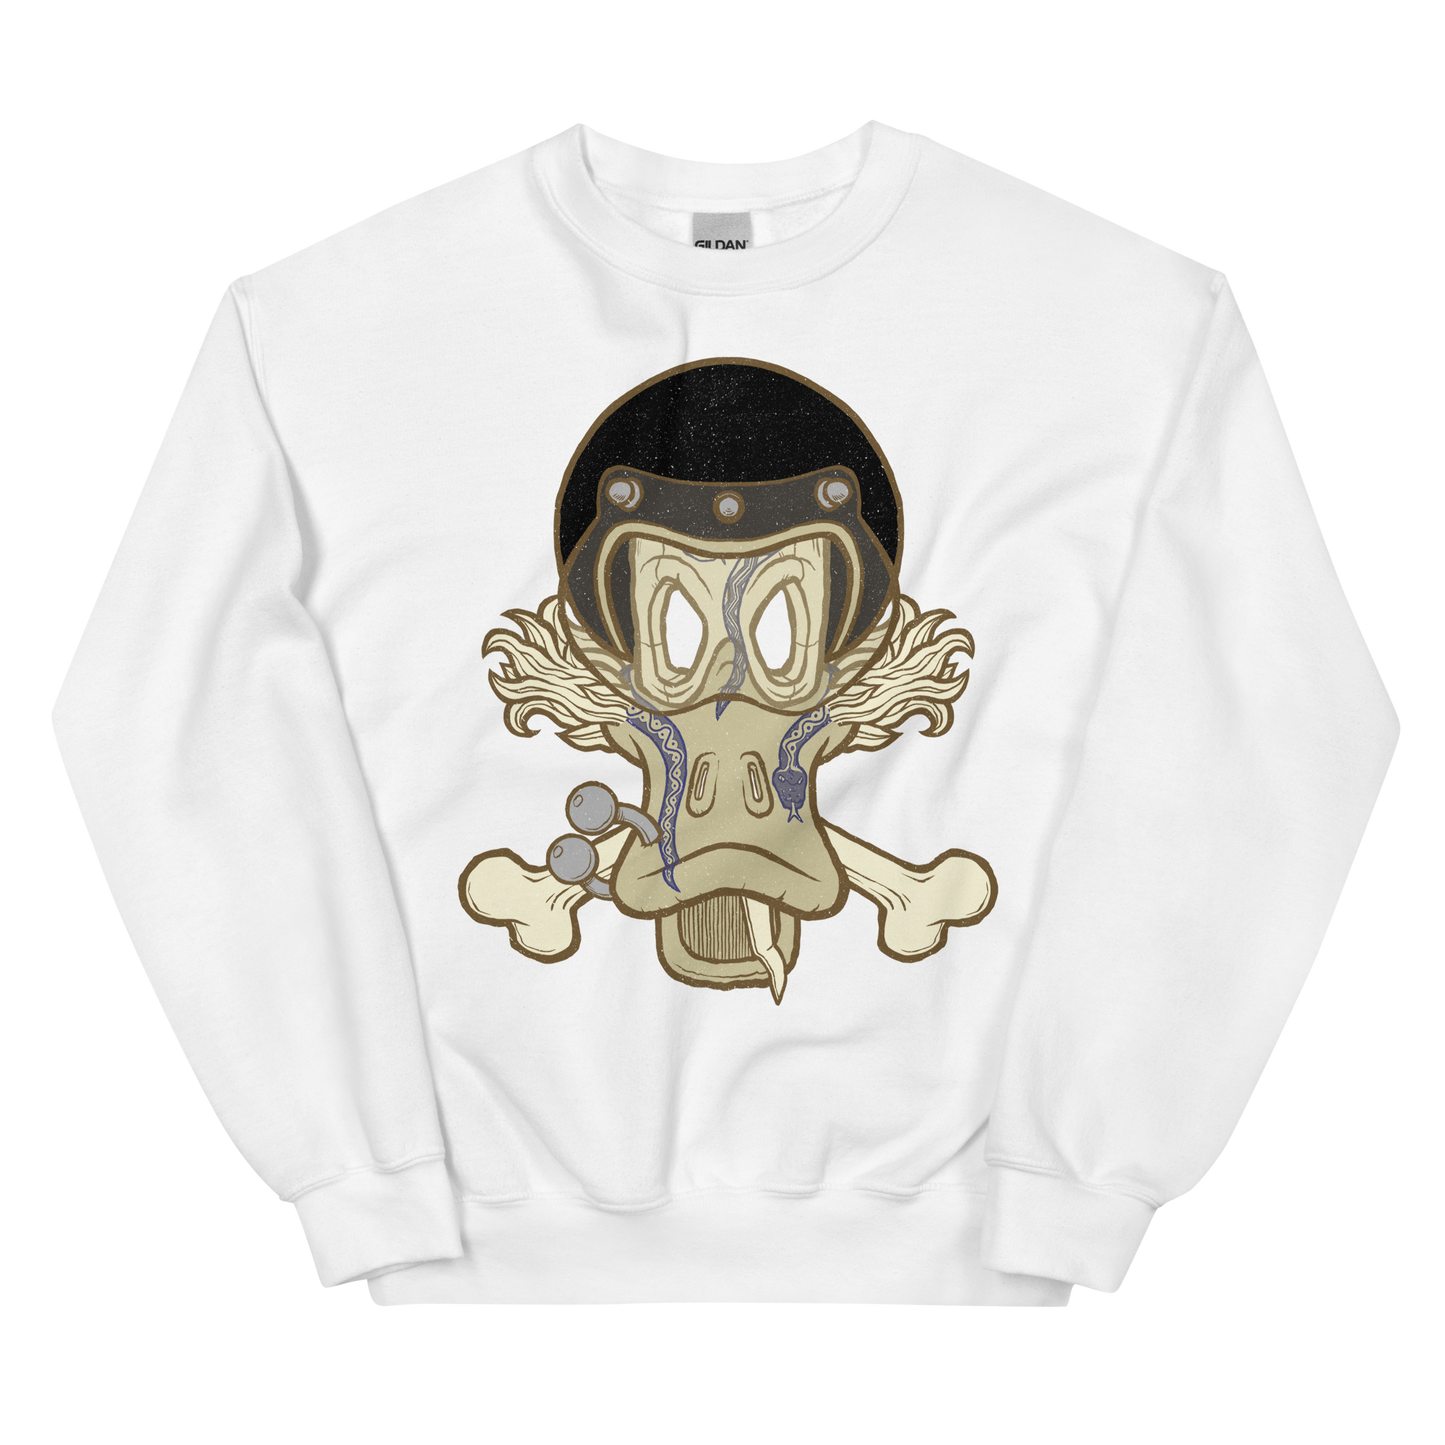 No 002 Wierd Duck Skull collection sweatshirt